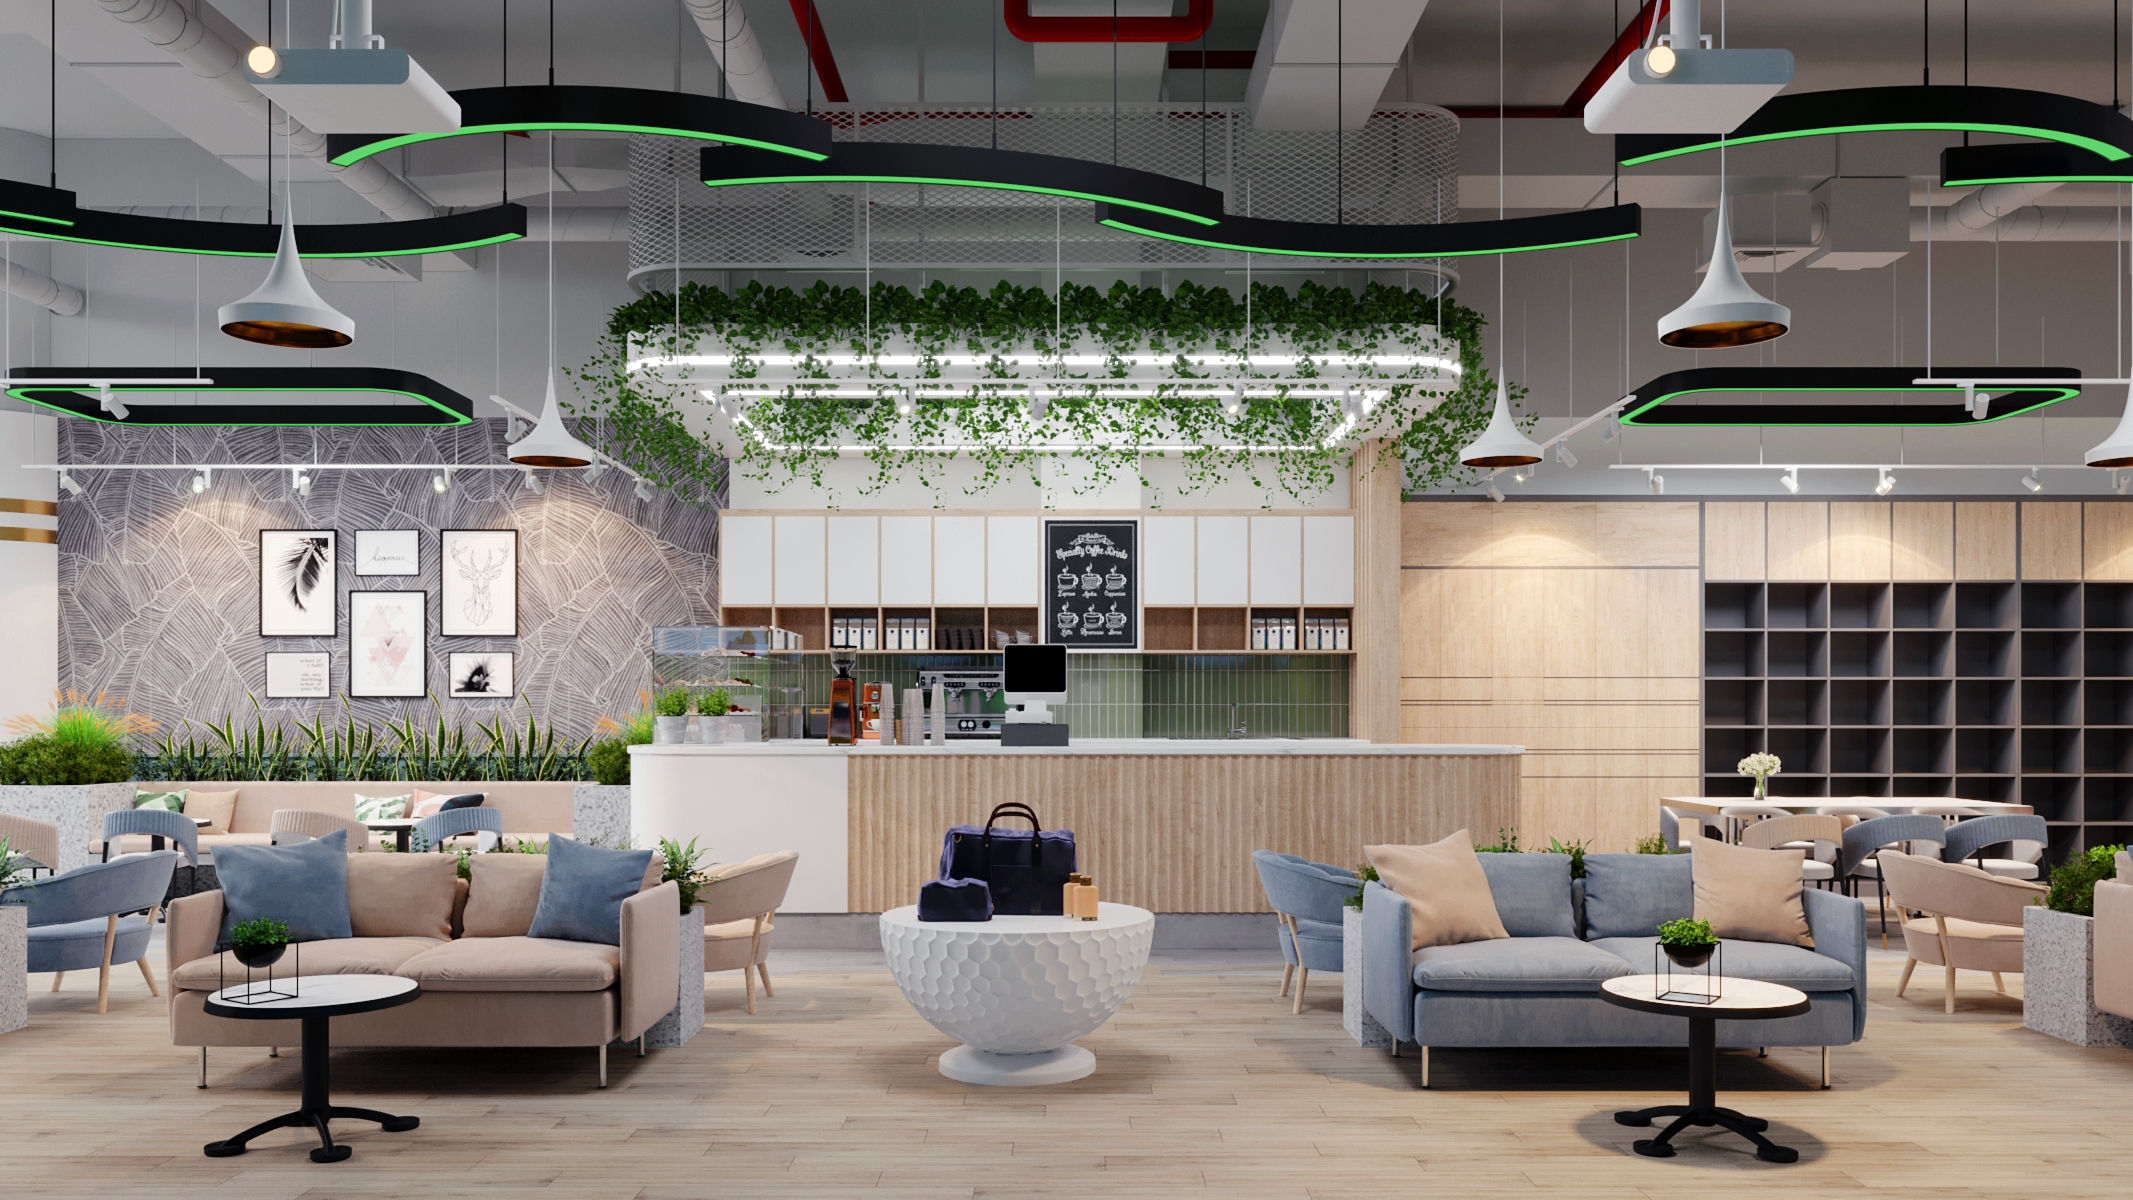 Thiết kế nội thất Cafe tại Hà Nội MIPA Golf - Coffee 1658053726 1